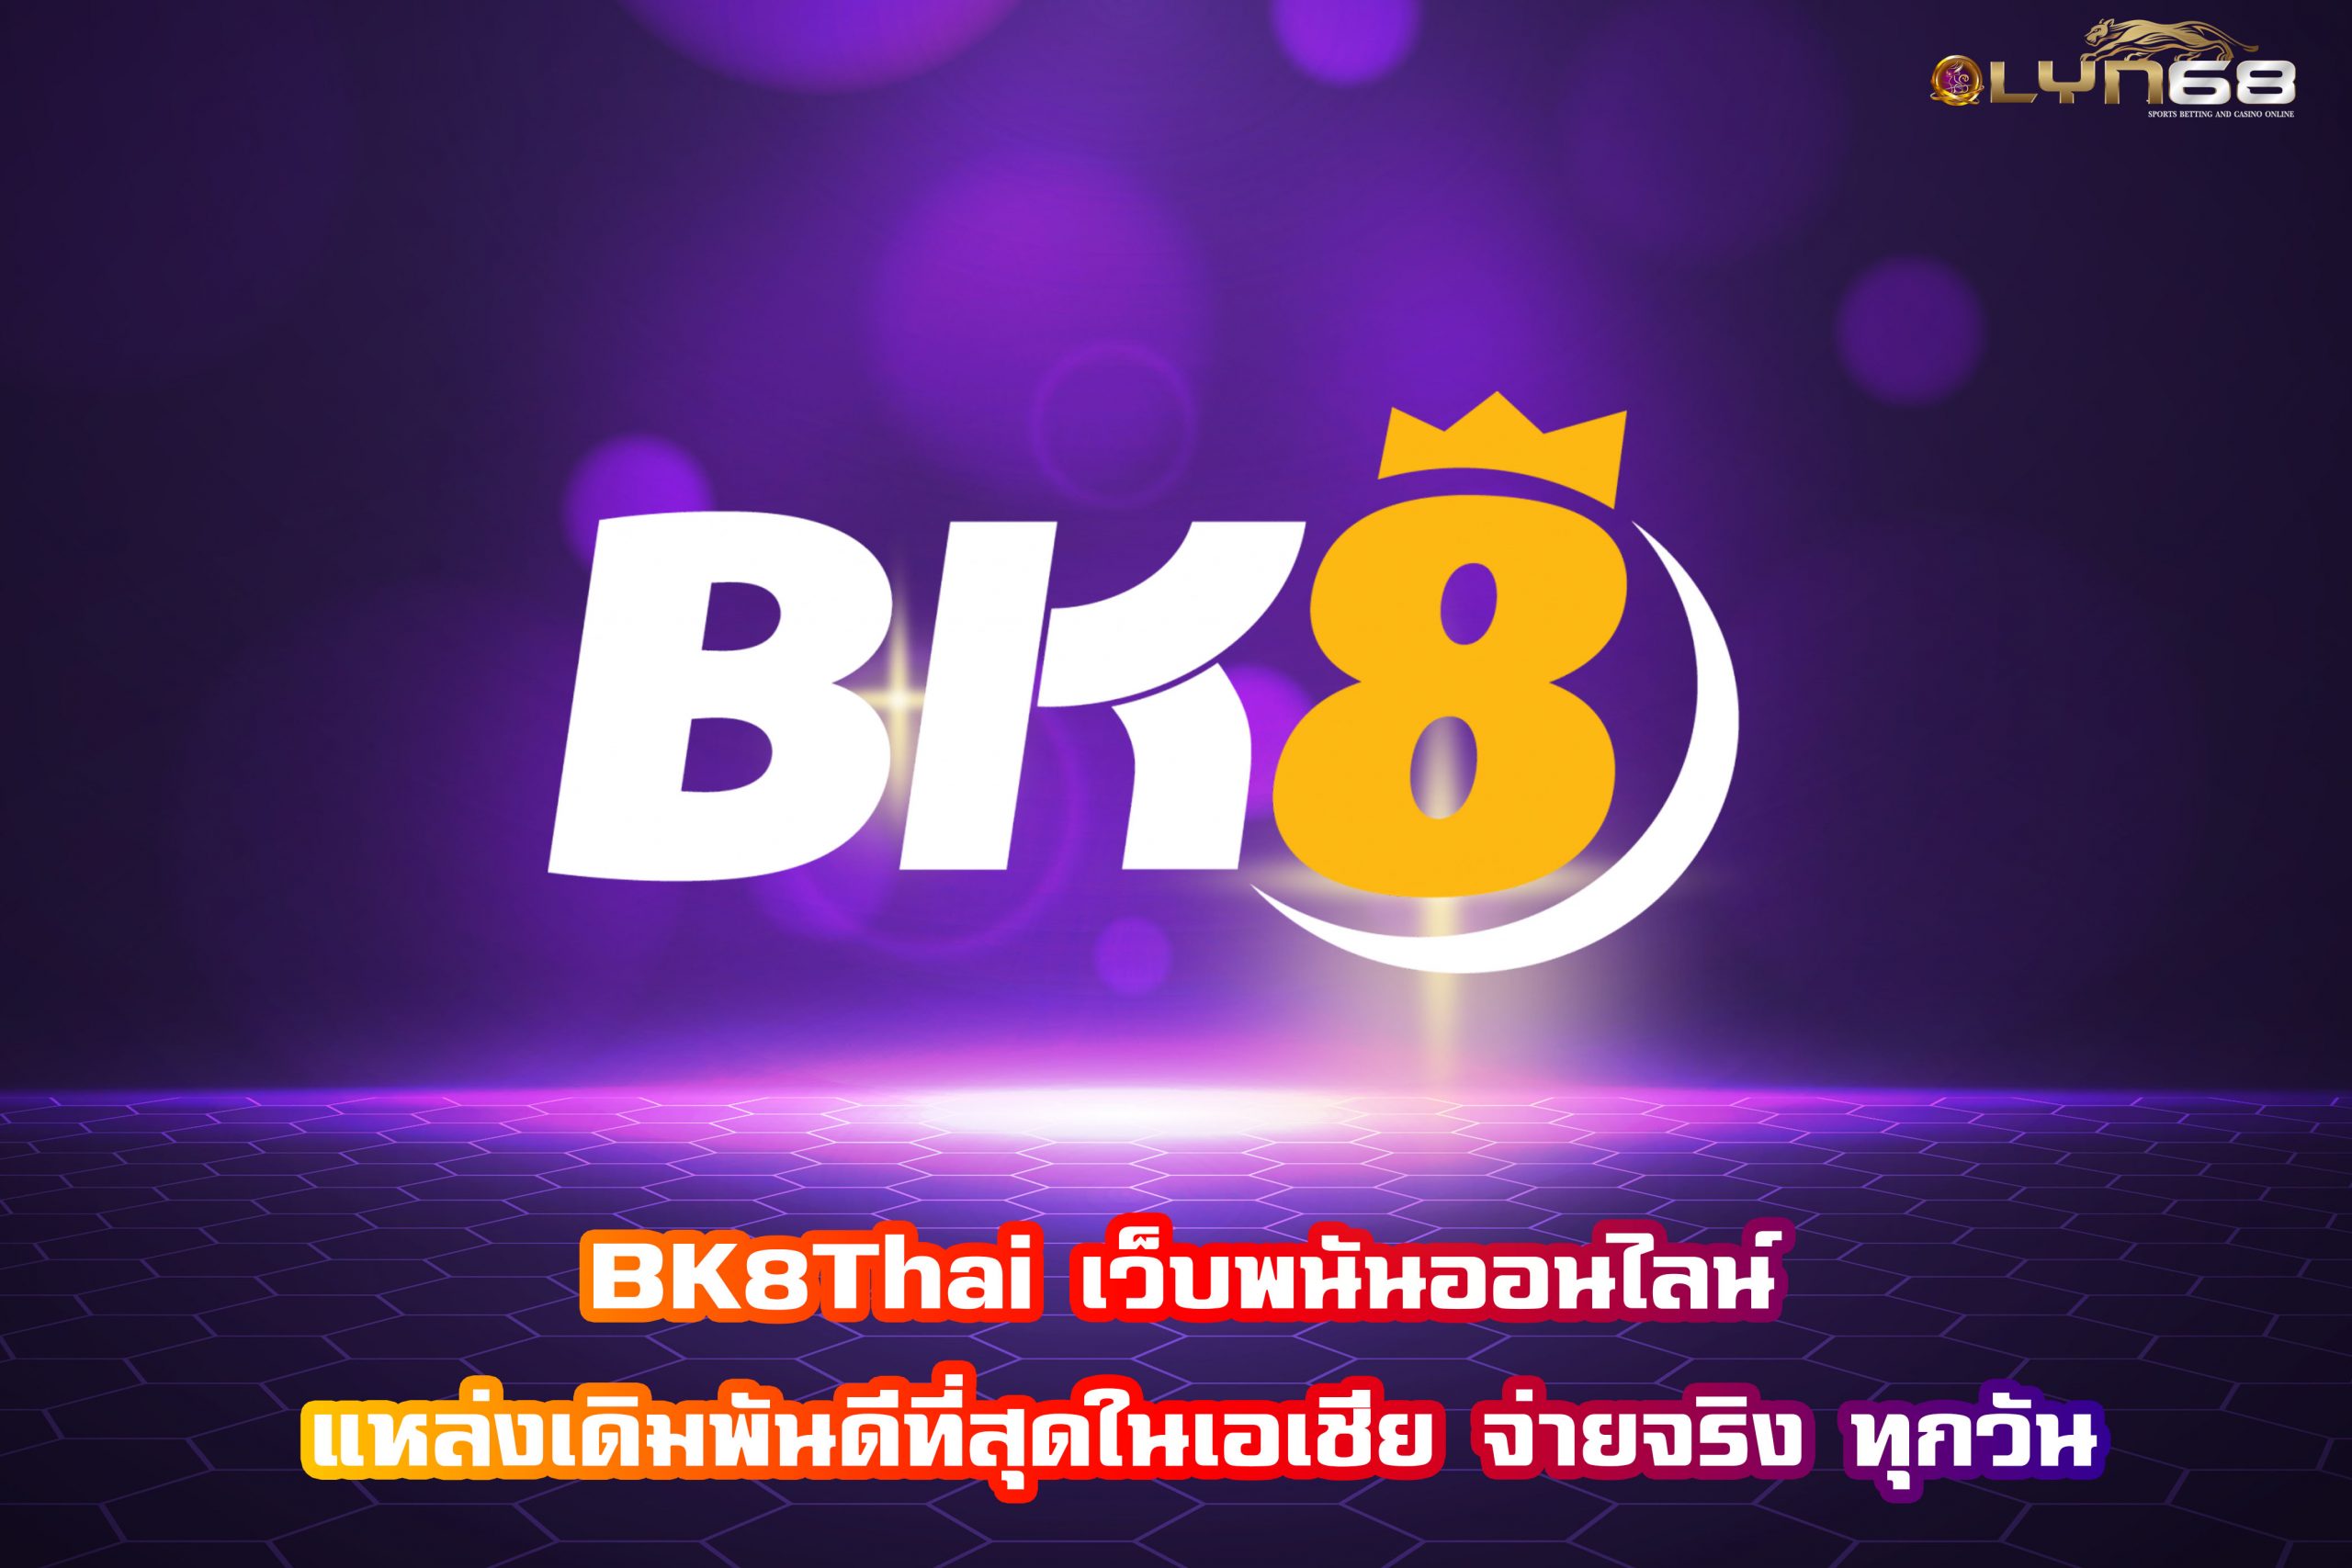 BK8Thai เว็บพนันออนไลน์ แหล่งเดิมพันดีที่สุดในเอเชีย จ่ายจริง ทุกวัน​